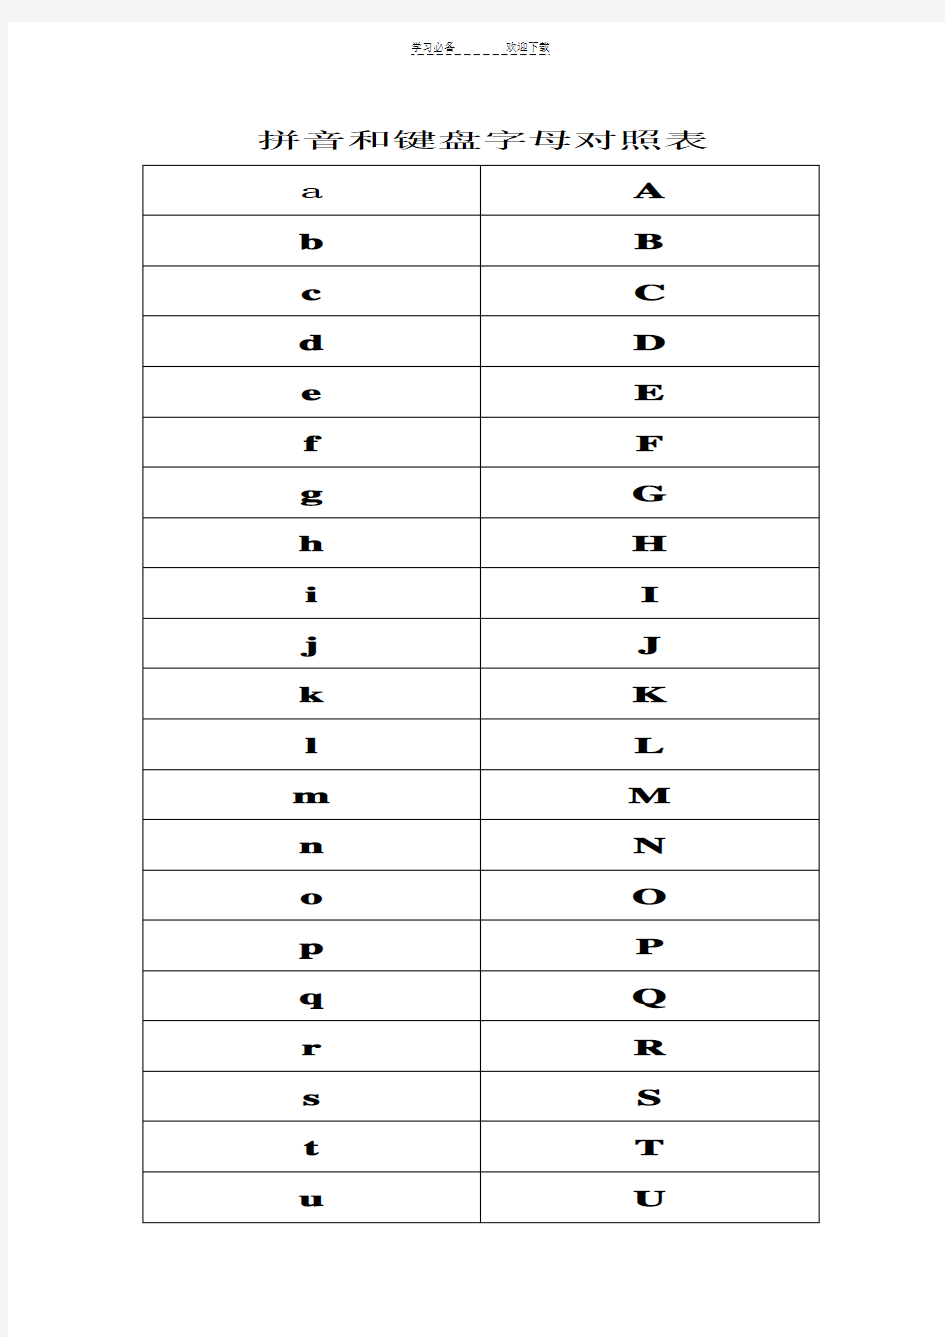 拼音和键盘字母对照表